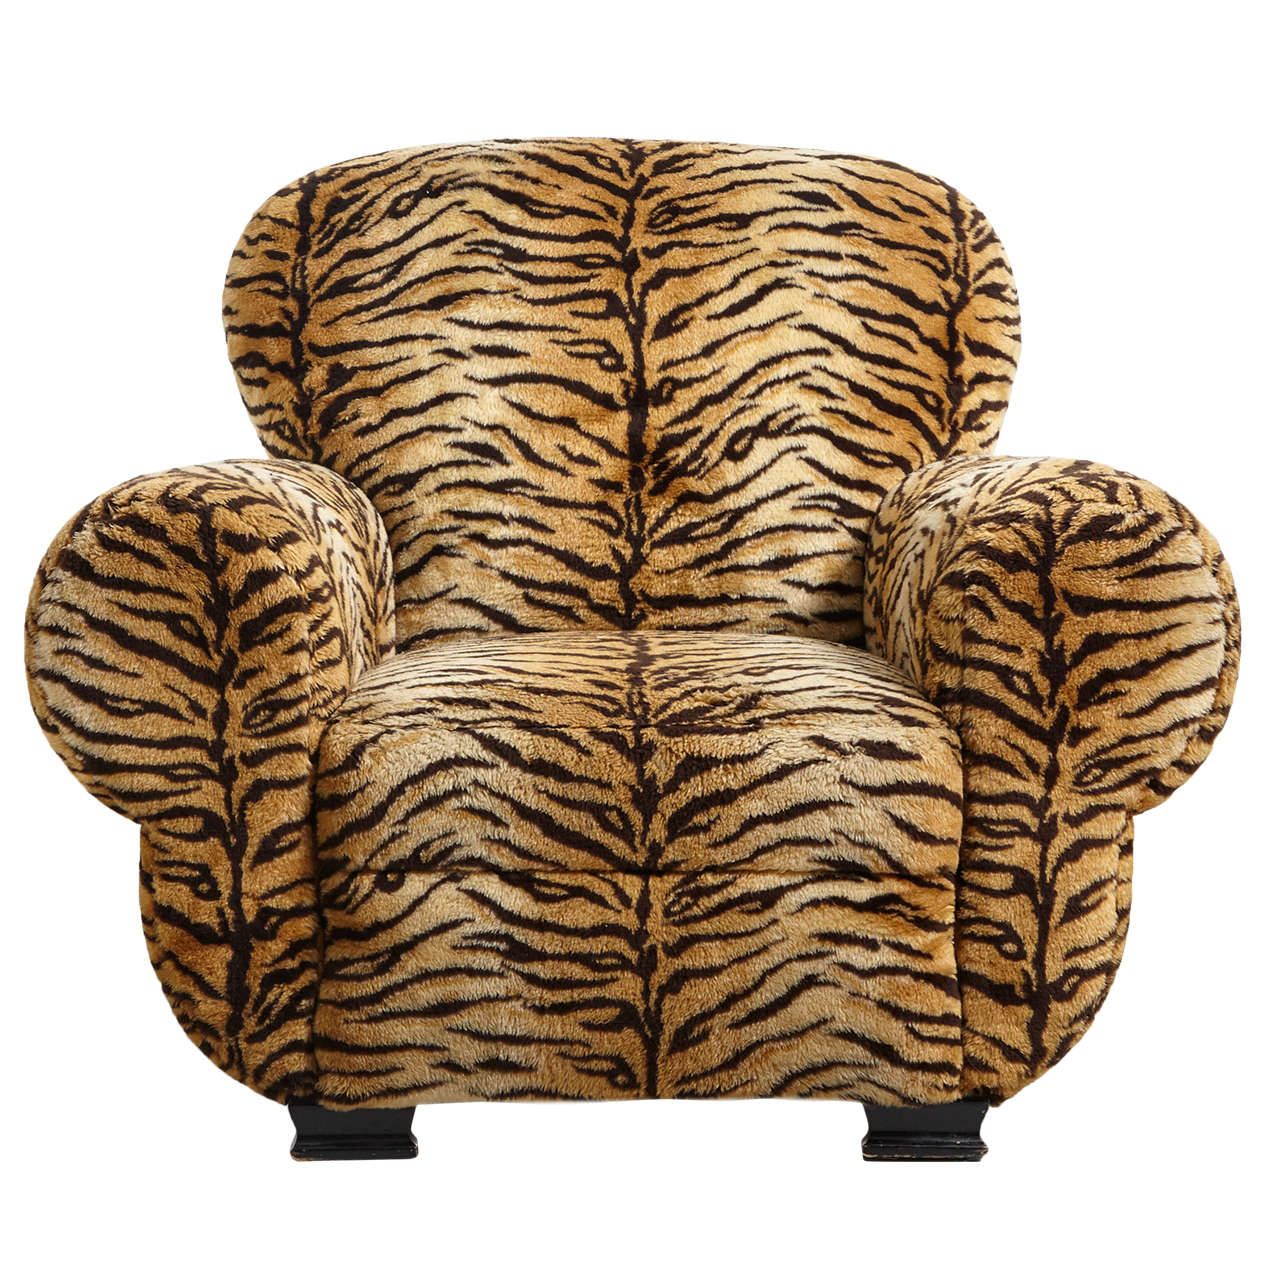 Huge Art Deco Tiger Armchair